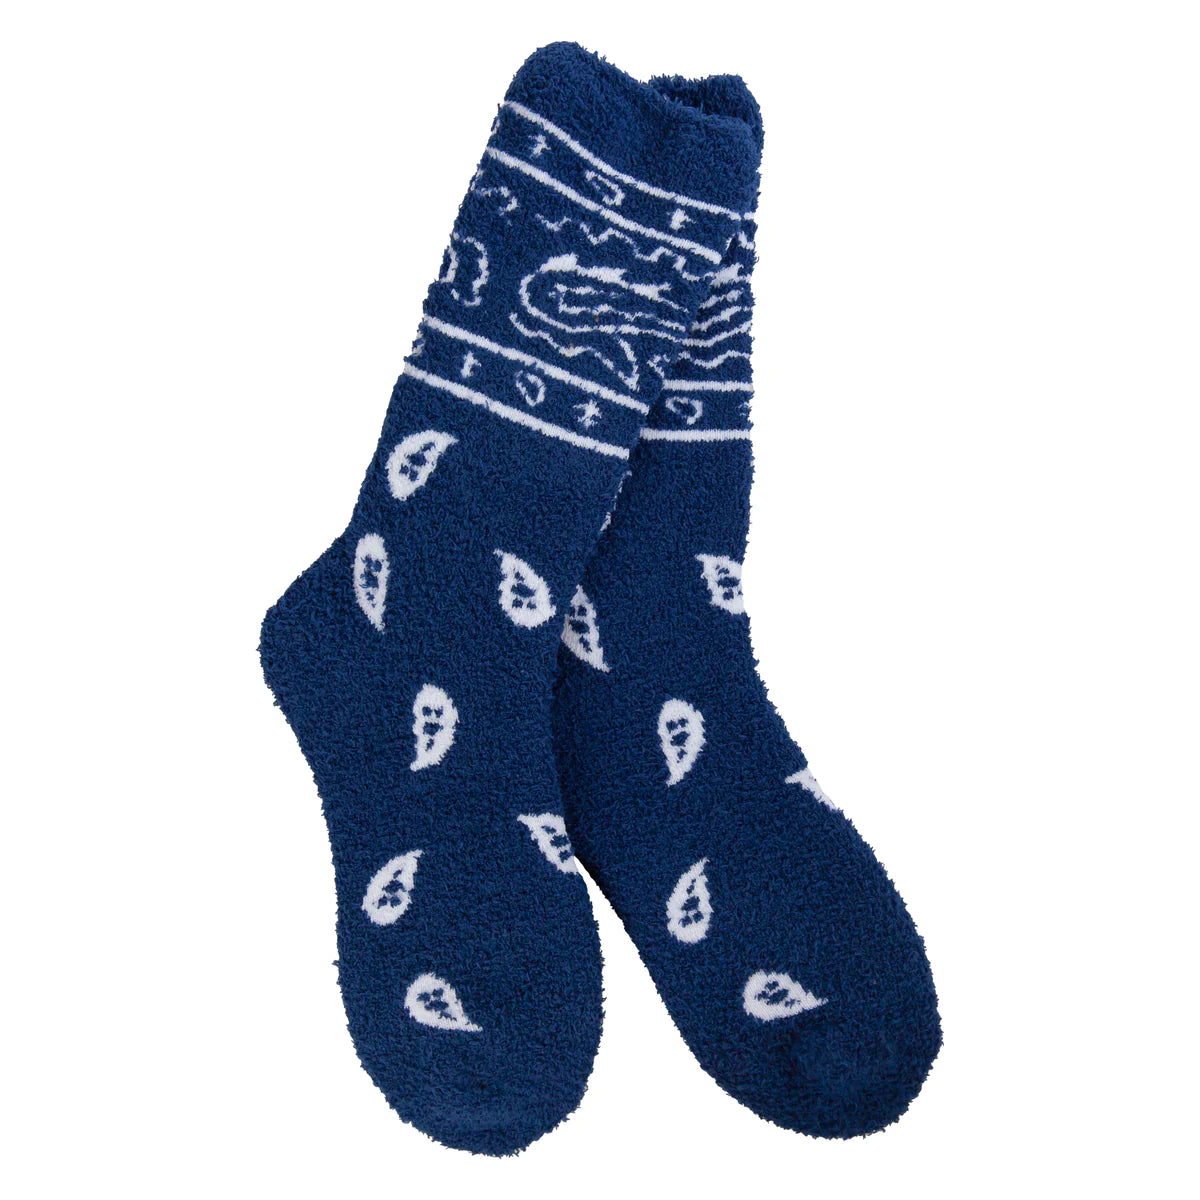 Bandana Navy Socks